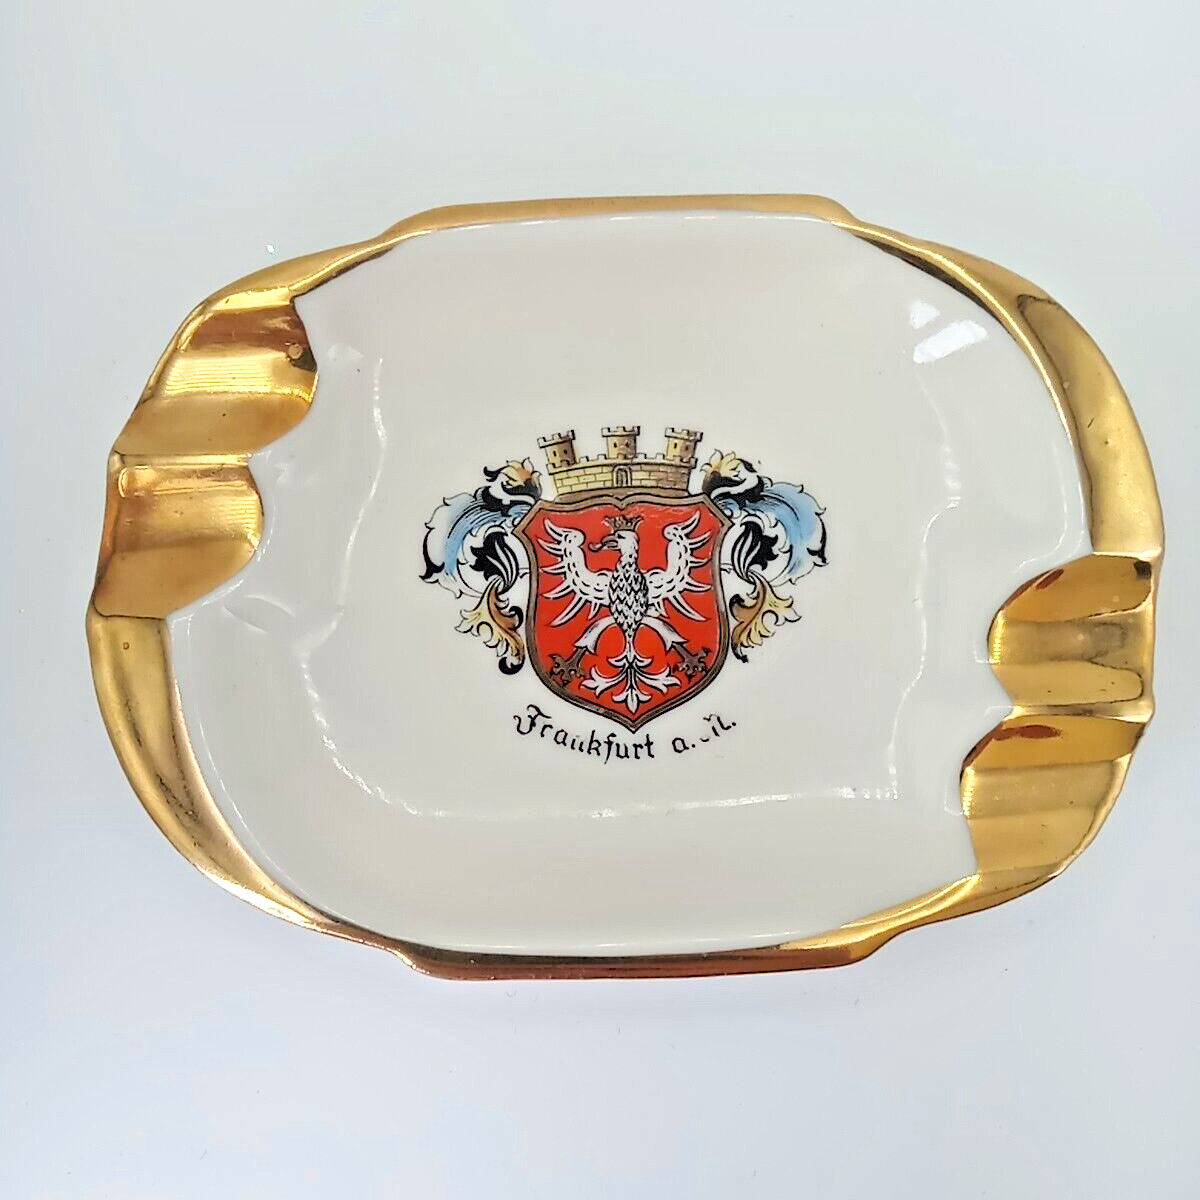 VTG Frankfurt aM Gold Trim 4 Slot Porcelain Ashtray Handgemalt Bavaria Crown A&S